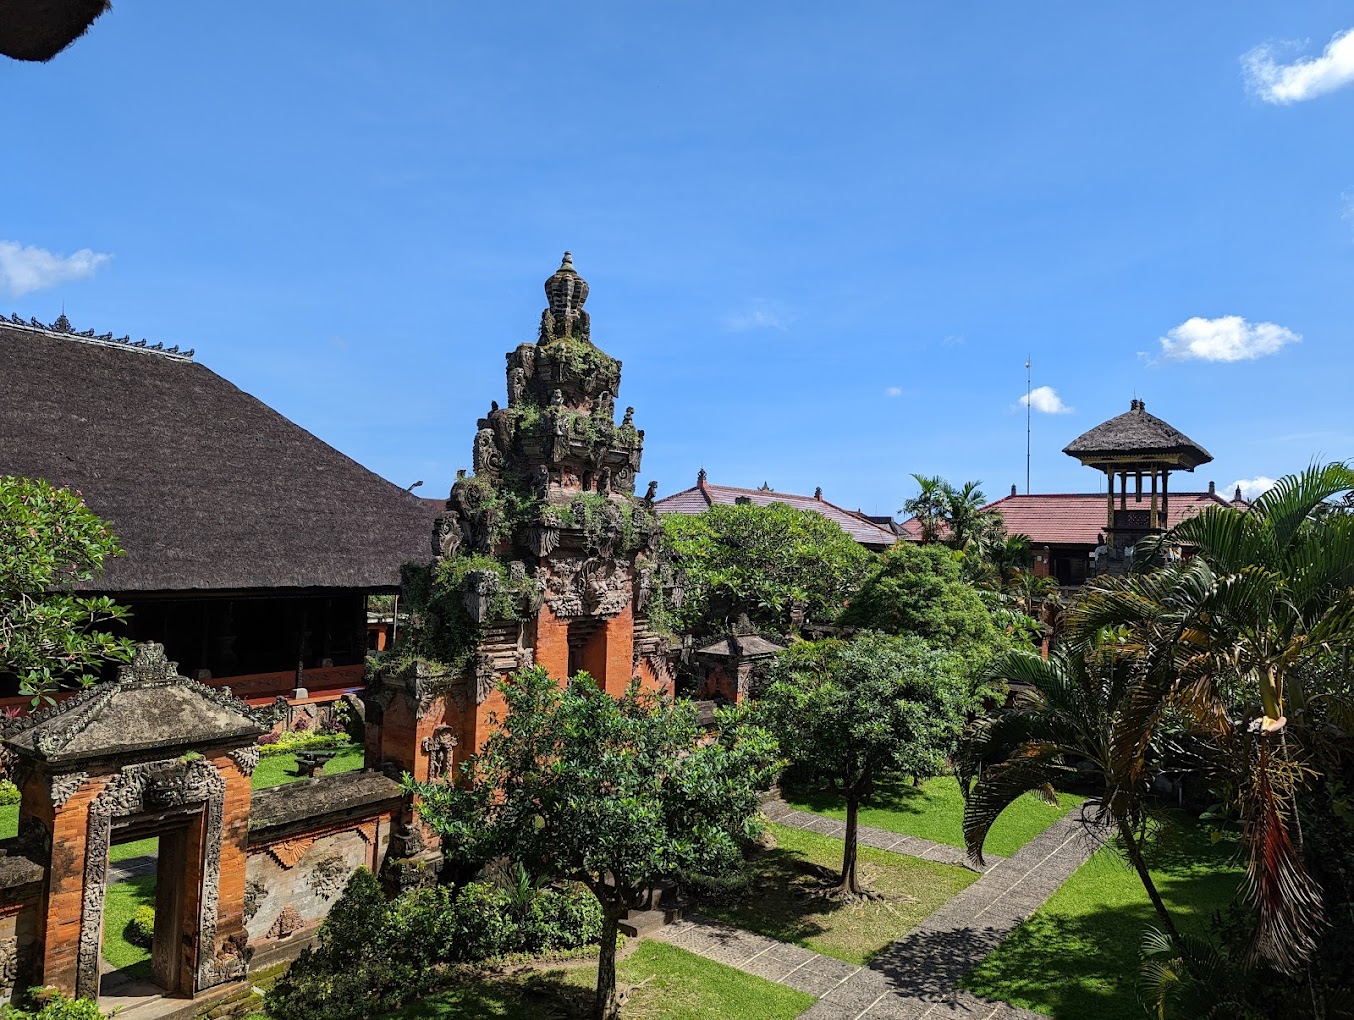 Daya Tarik Objek Wisata Museum Bali Denpasar di Dangin Puri Denpasar Bali